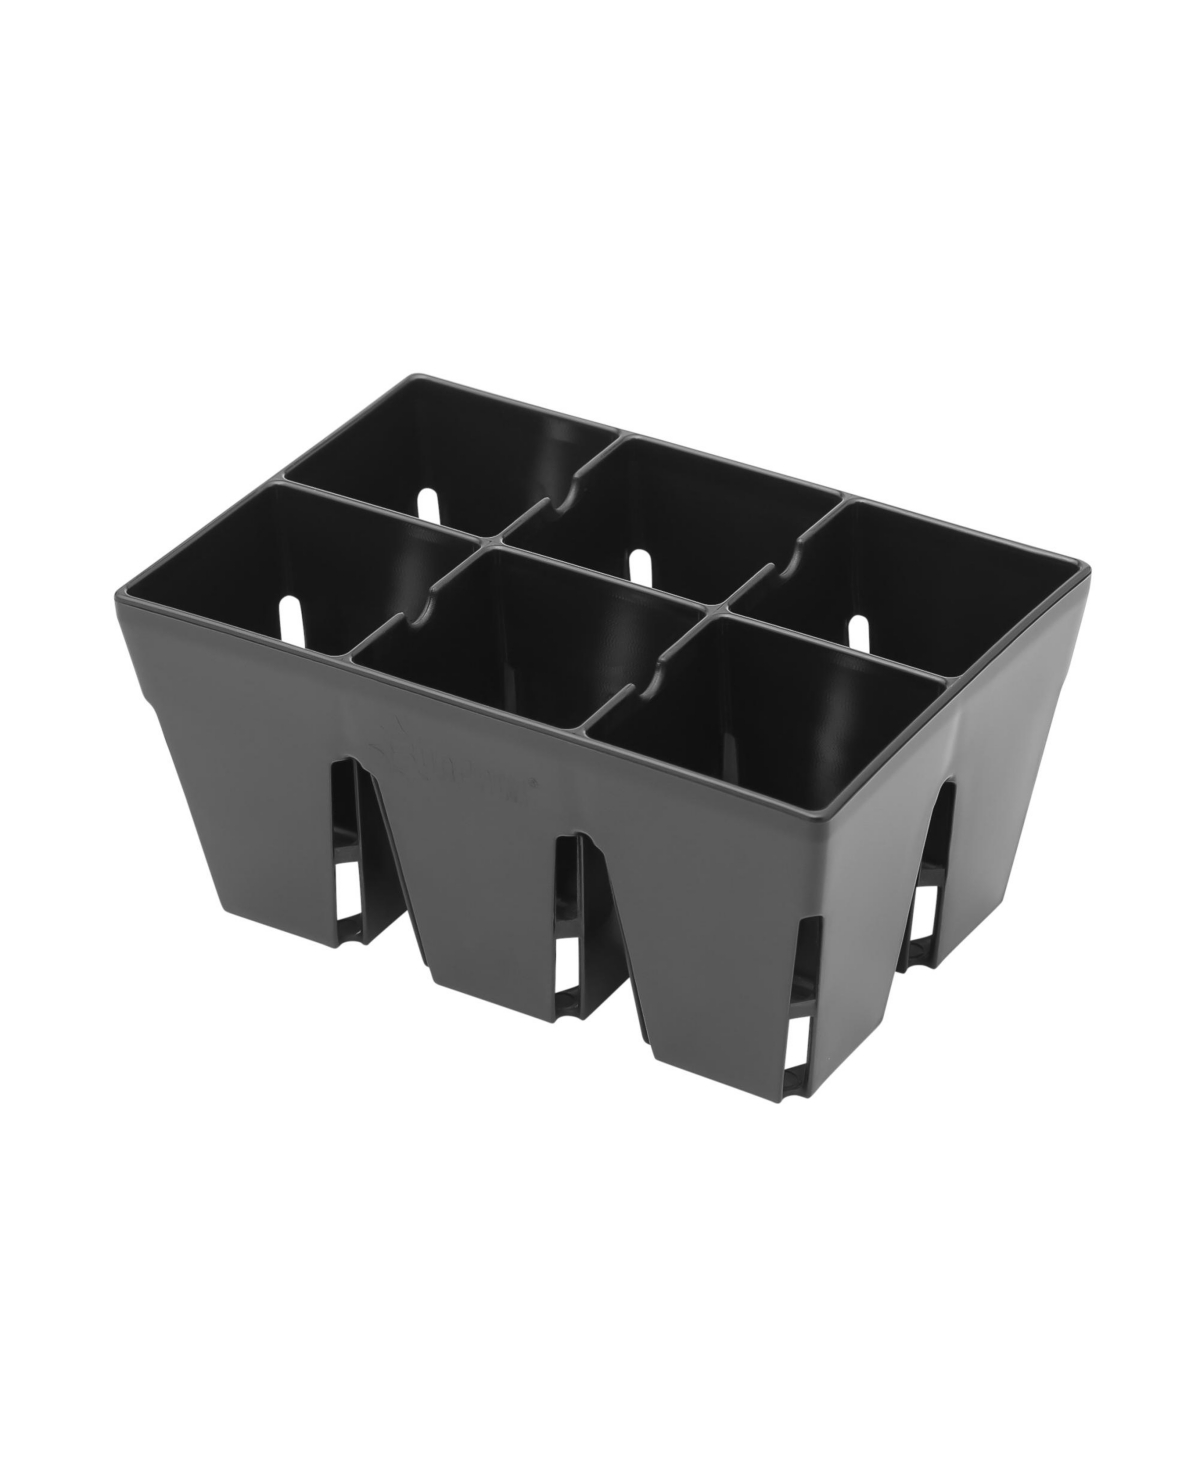 5 x 3.25in 6 Cell Mega Square Insert Tray, Black - Black